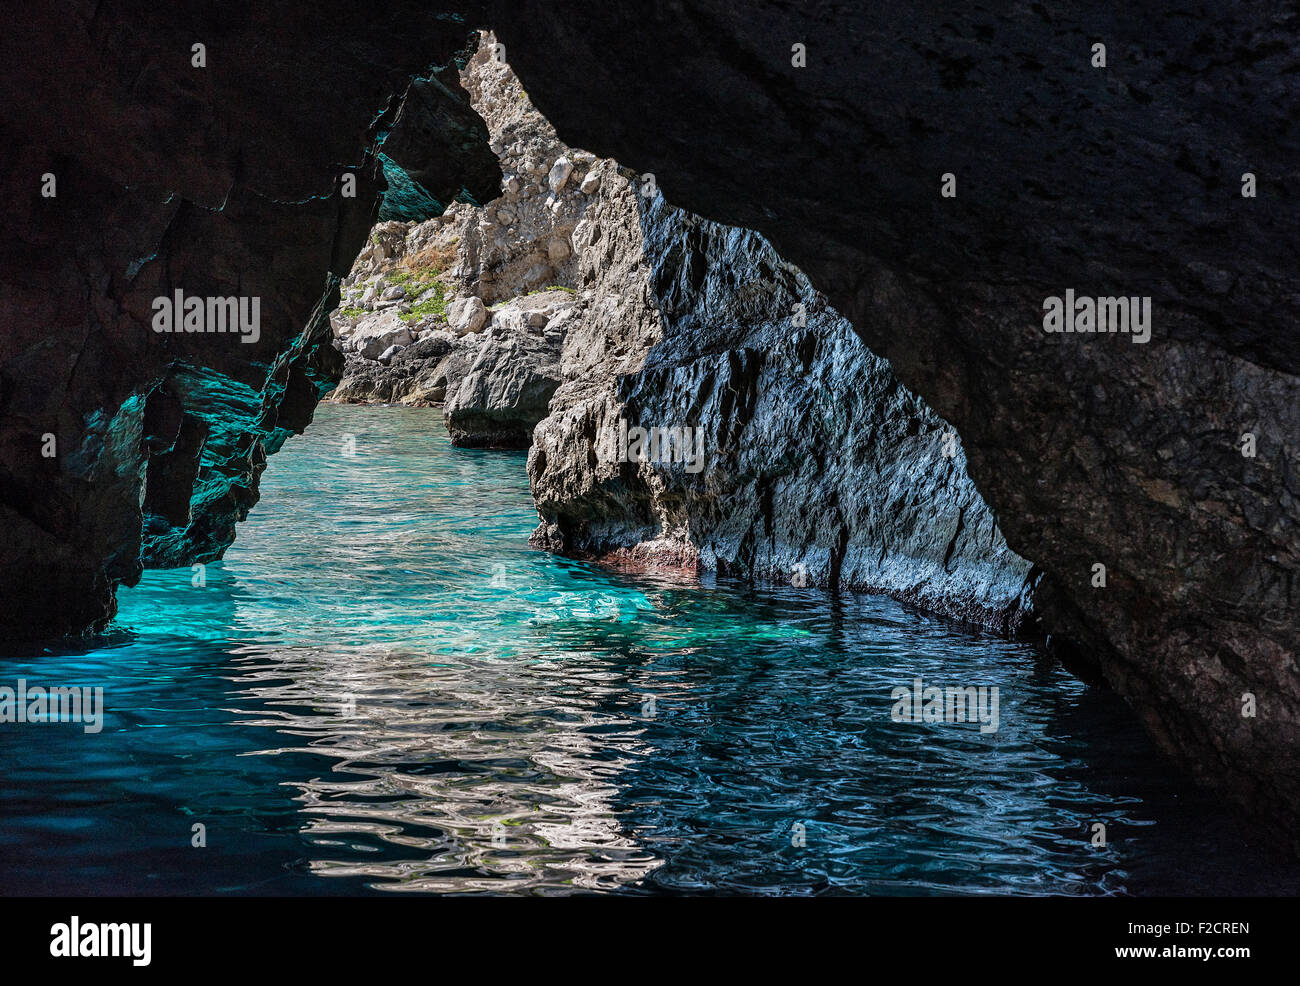 La Grotta Verde, green grotto, sur l'île de Capri, Campanie, Italie Banque D'Images